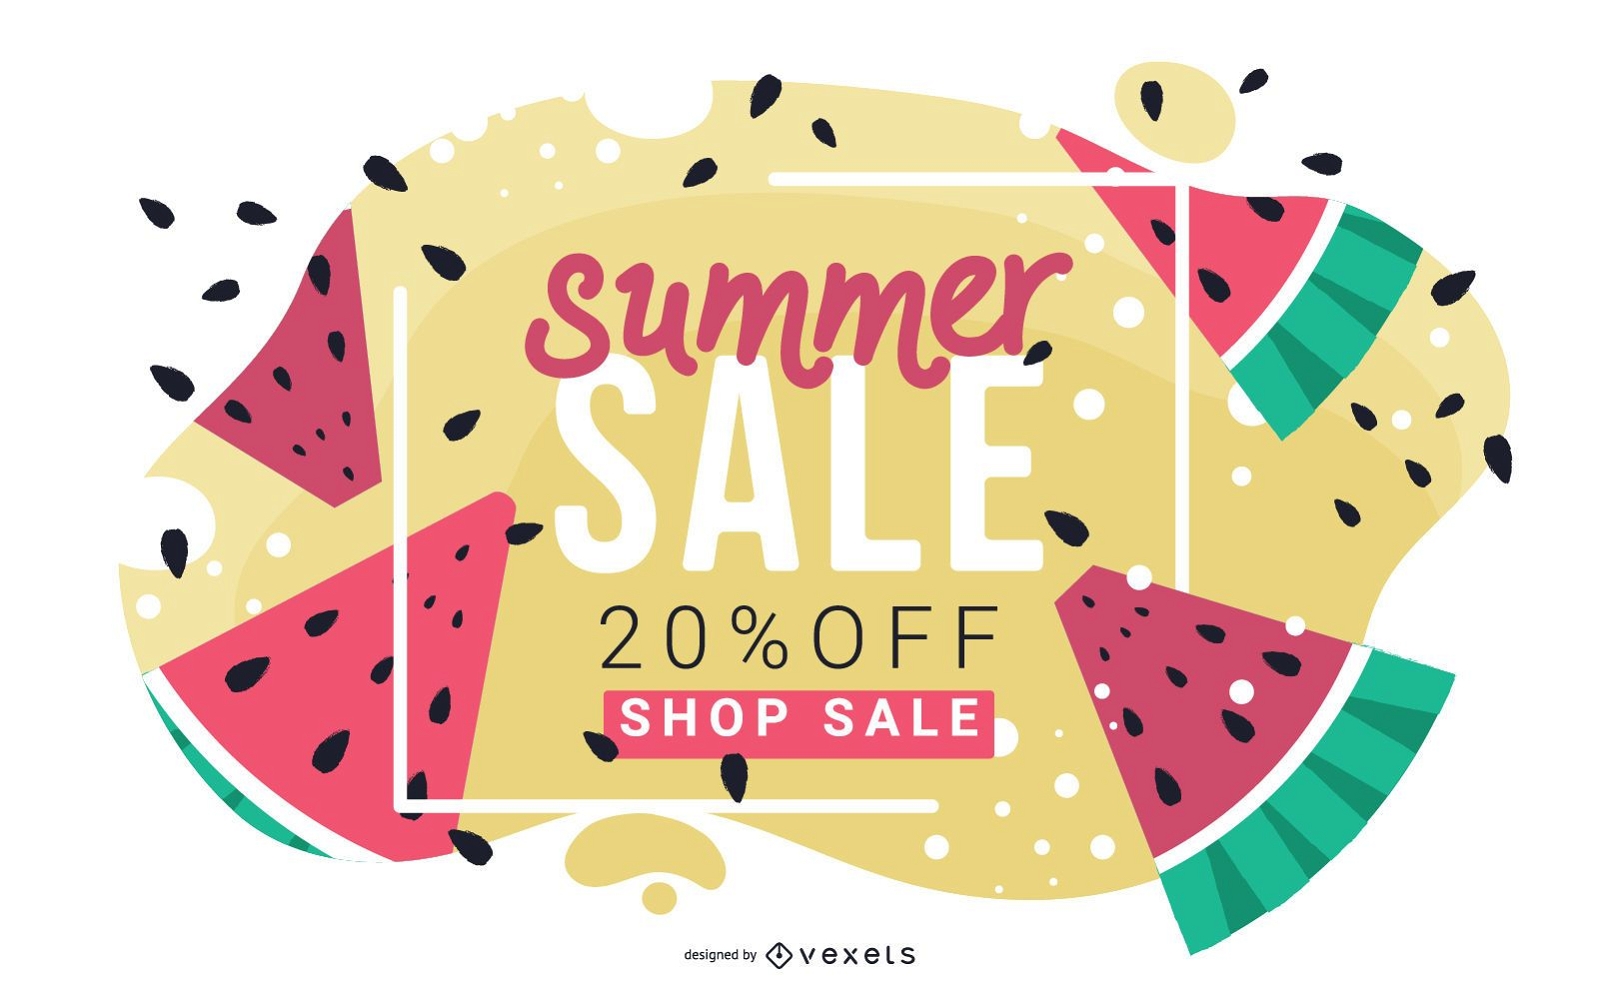 Watermelon summer sale banner